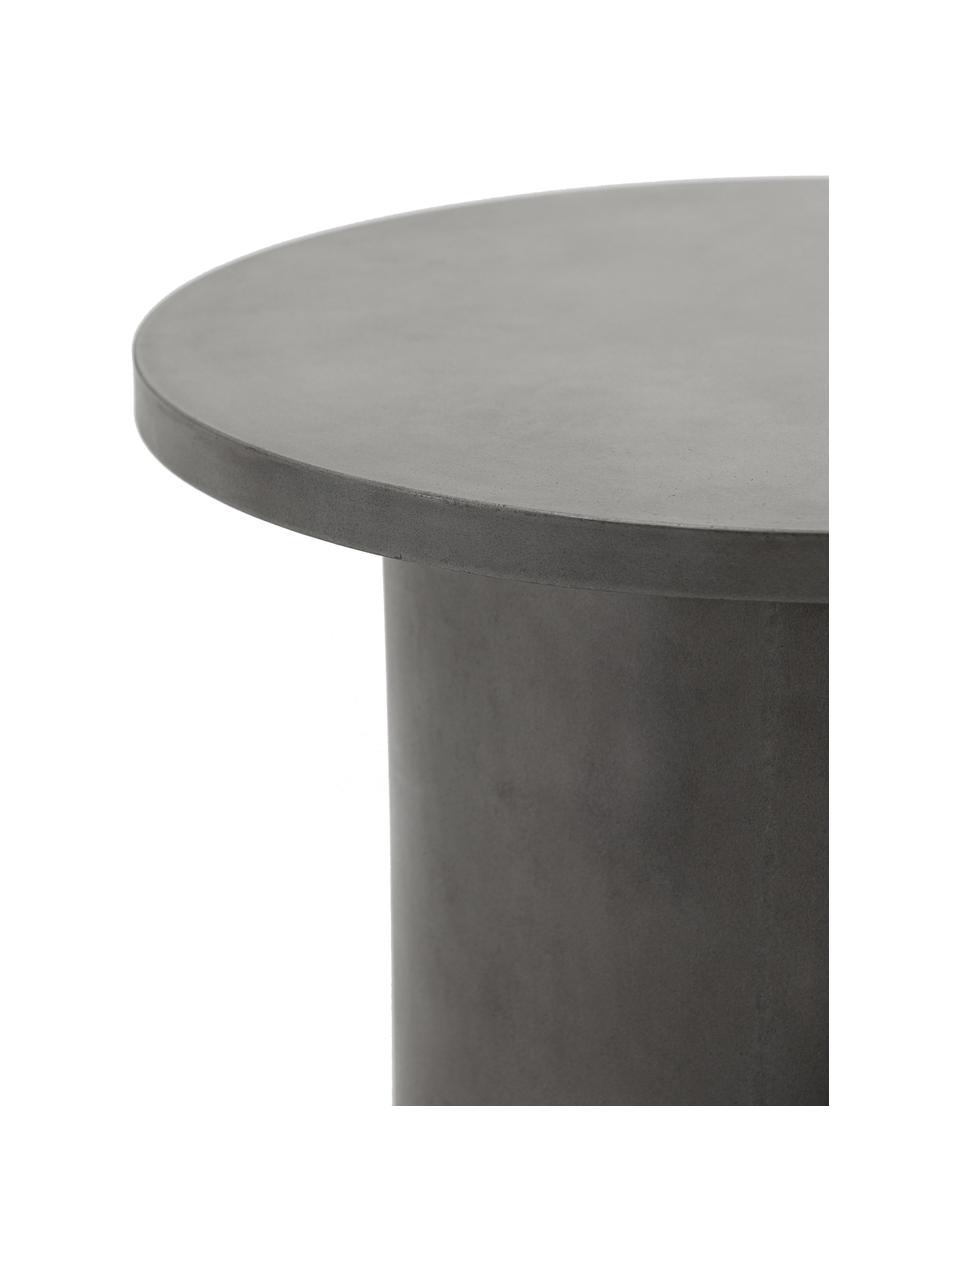 Tavolino da giardino fatto a mano Stone, Cemento, Grigio, Ø 65 x Alt. 45 cm